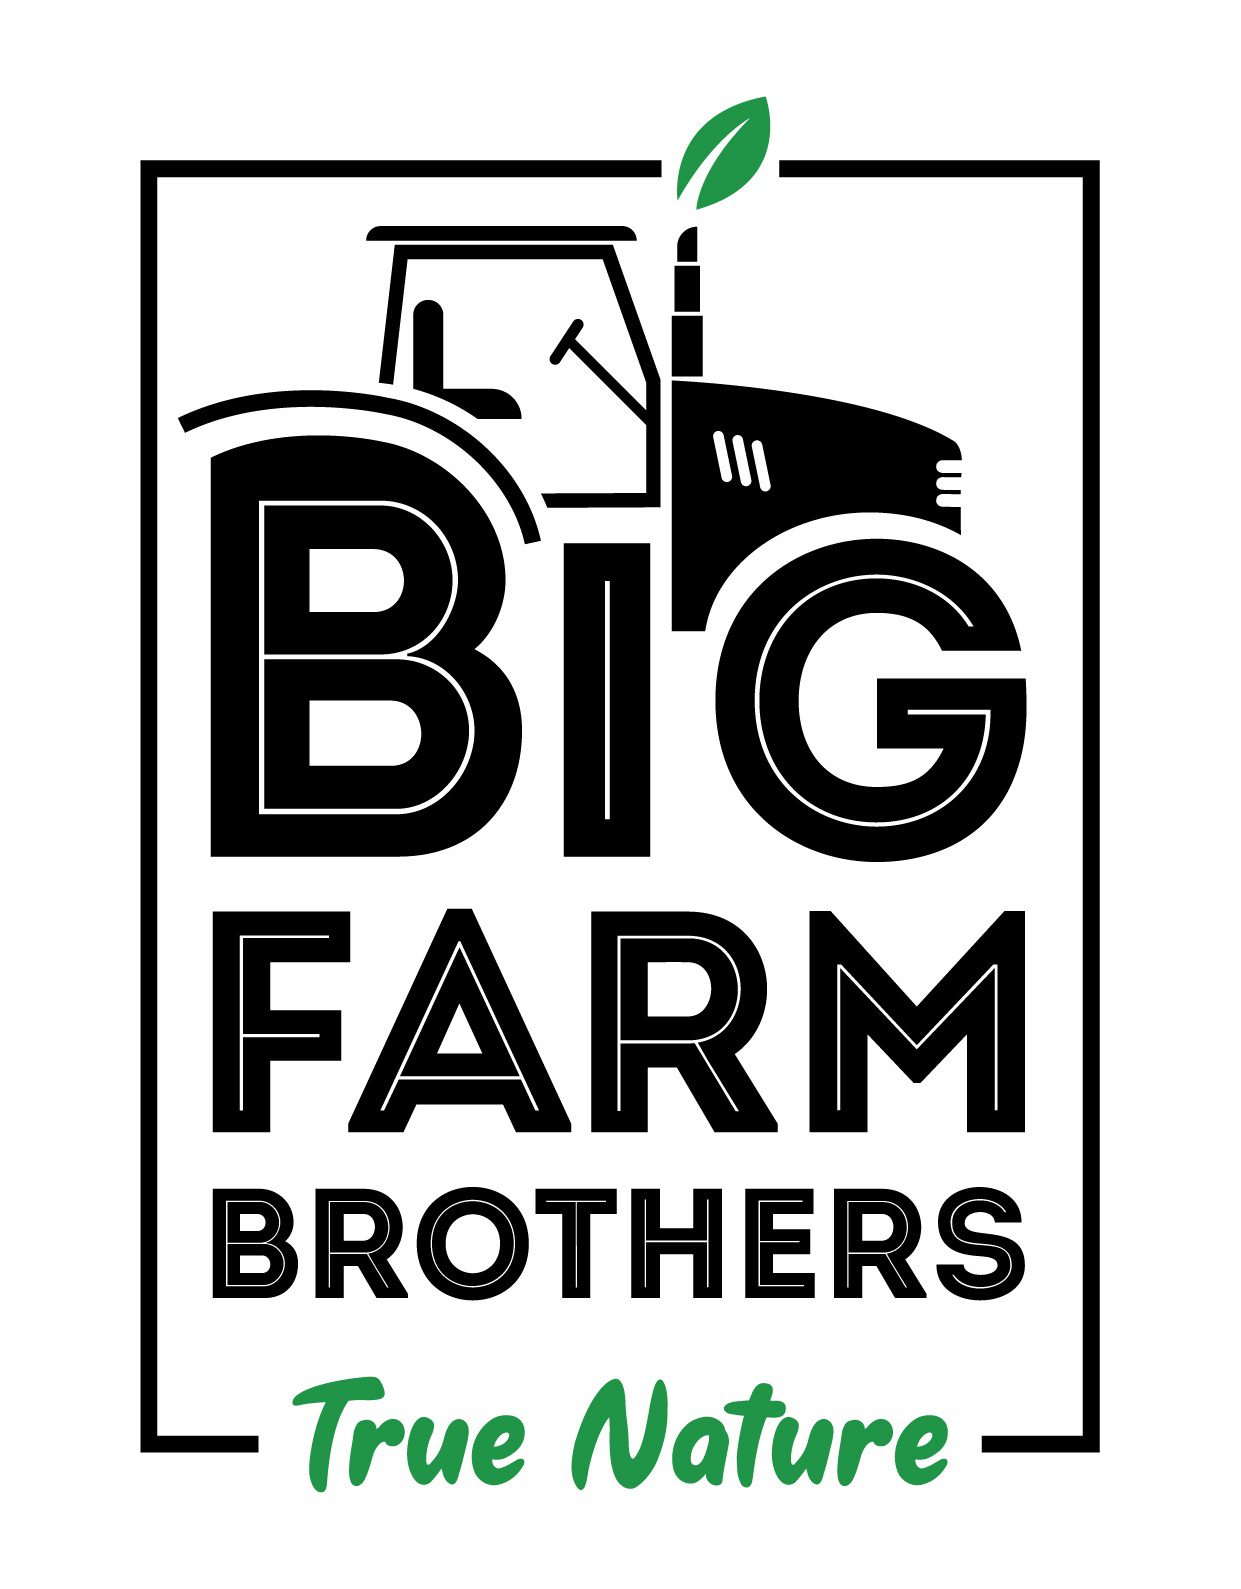 Big Farm Brothers